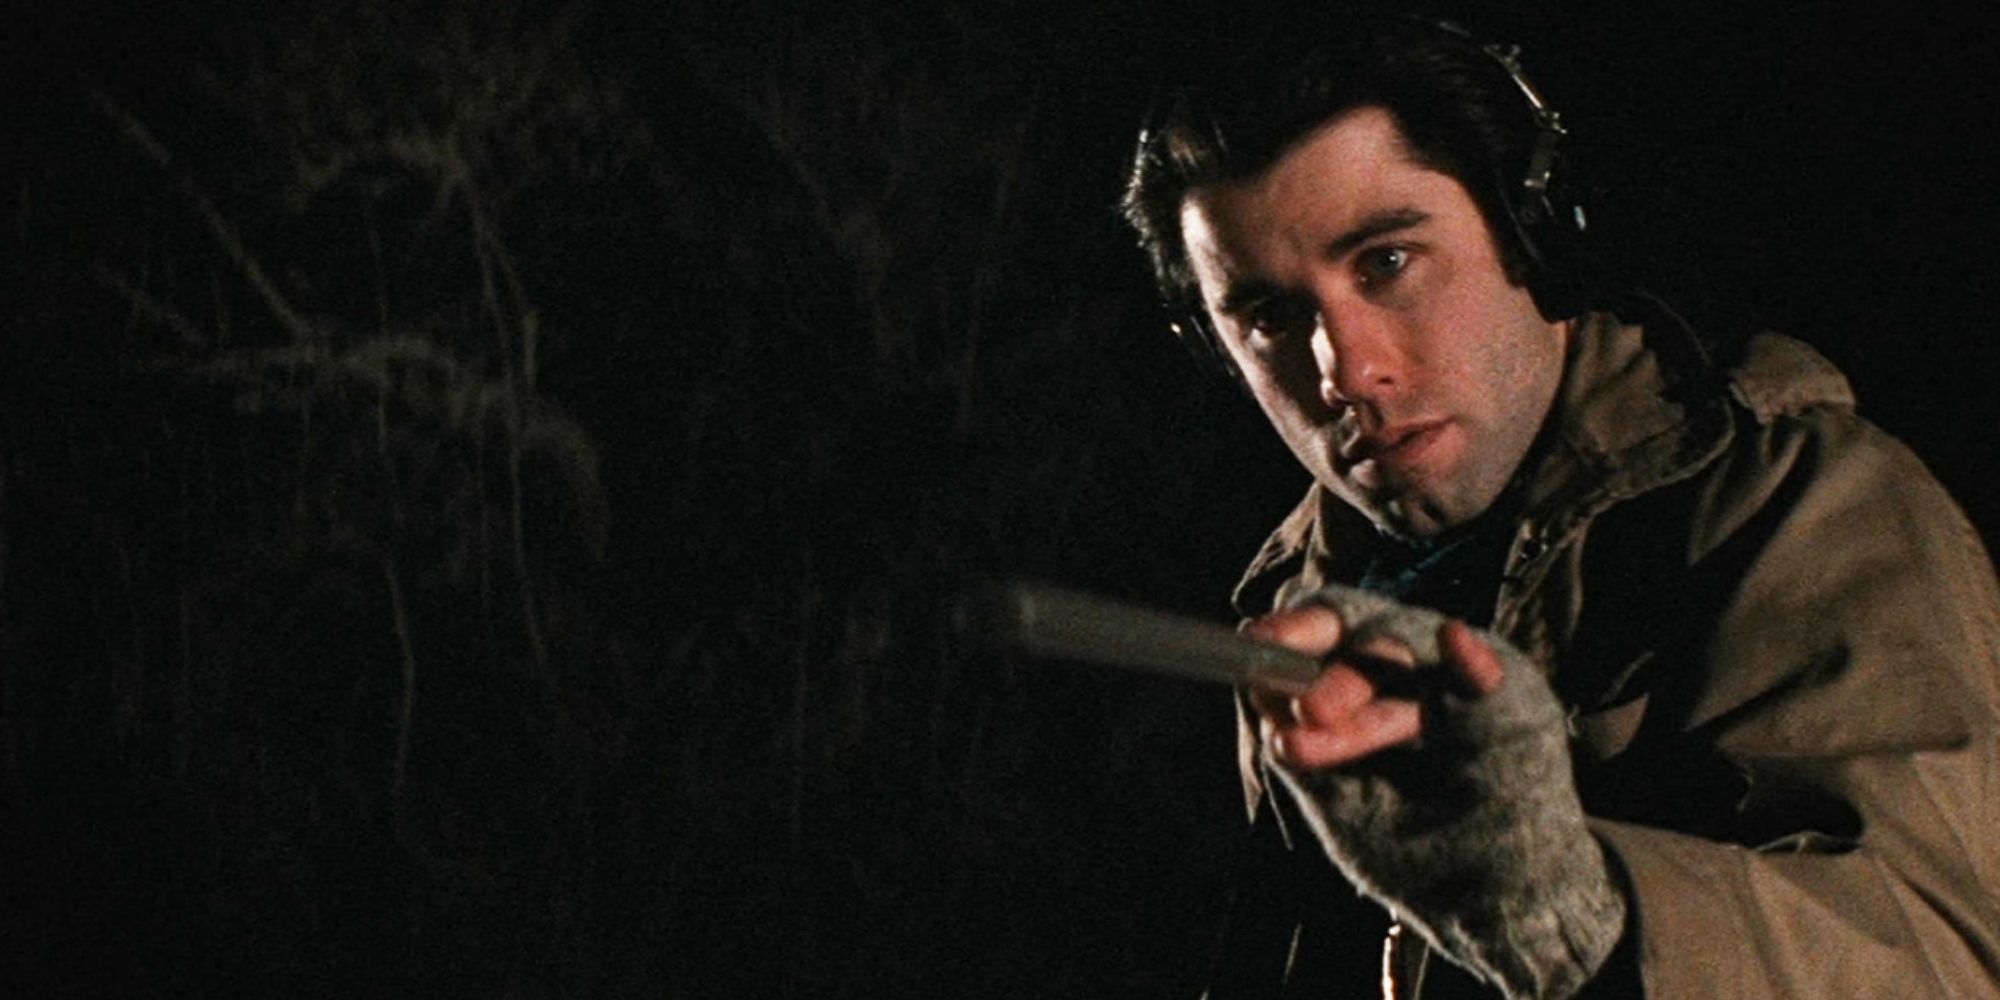 John Travolta dans le rôle de Jack Terry enregistrant le son ambiant à l'extérieur par une nuit froide